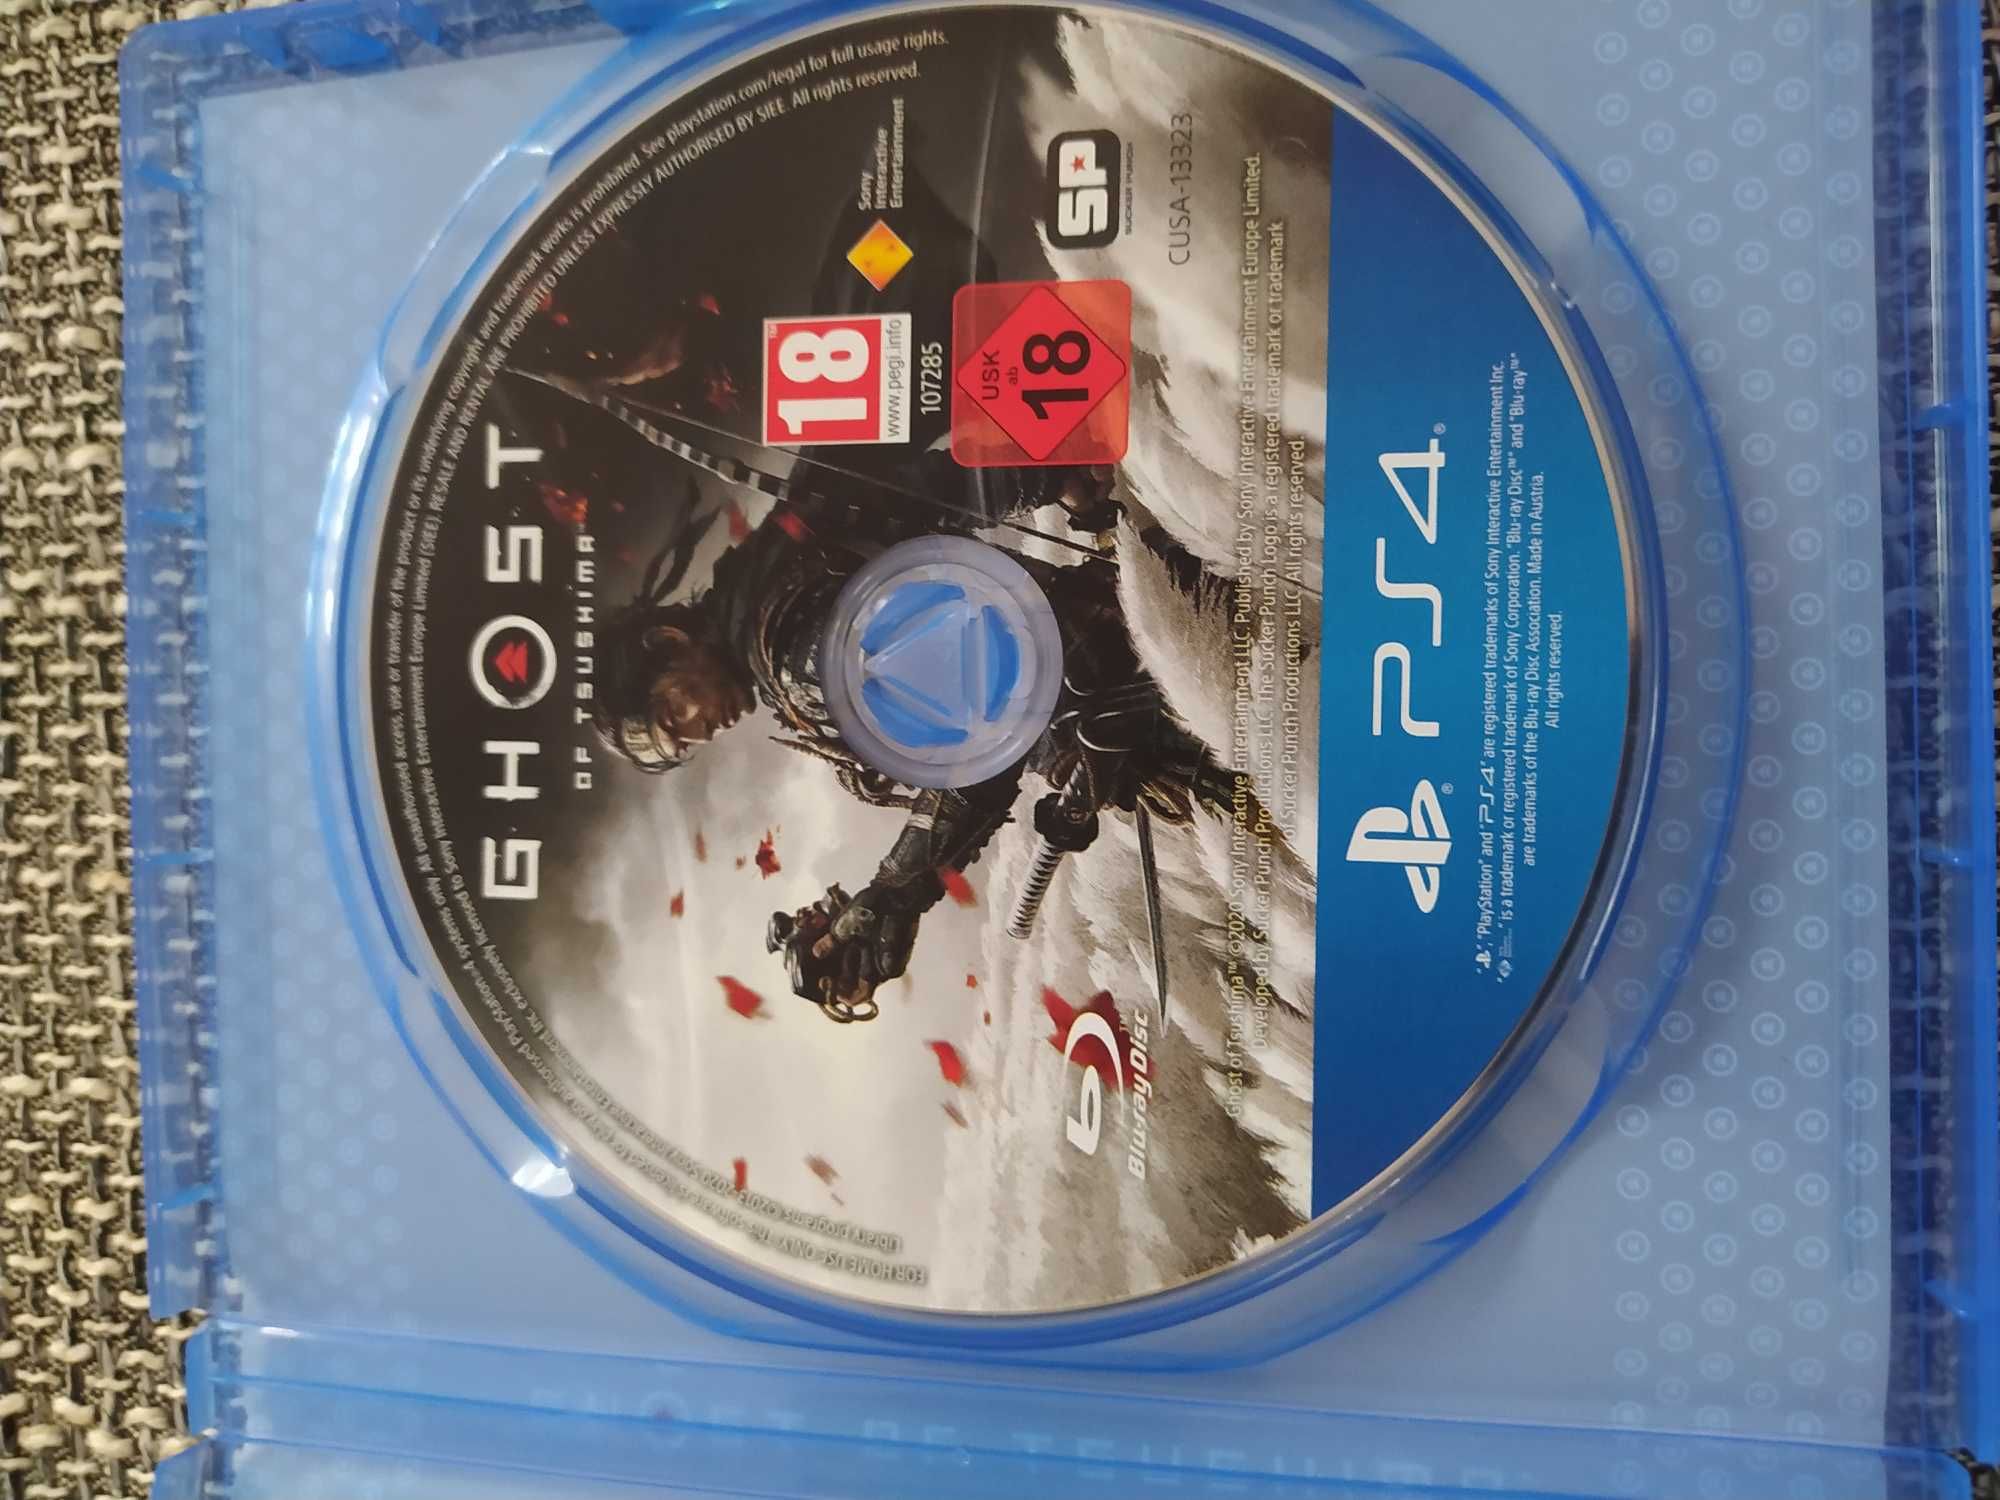 Gra PS4 Ghost bdb stan za 90zl